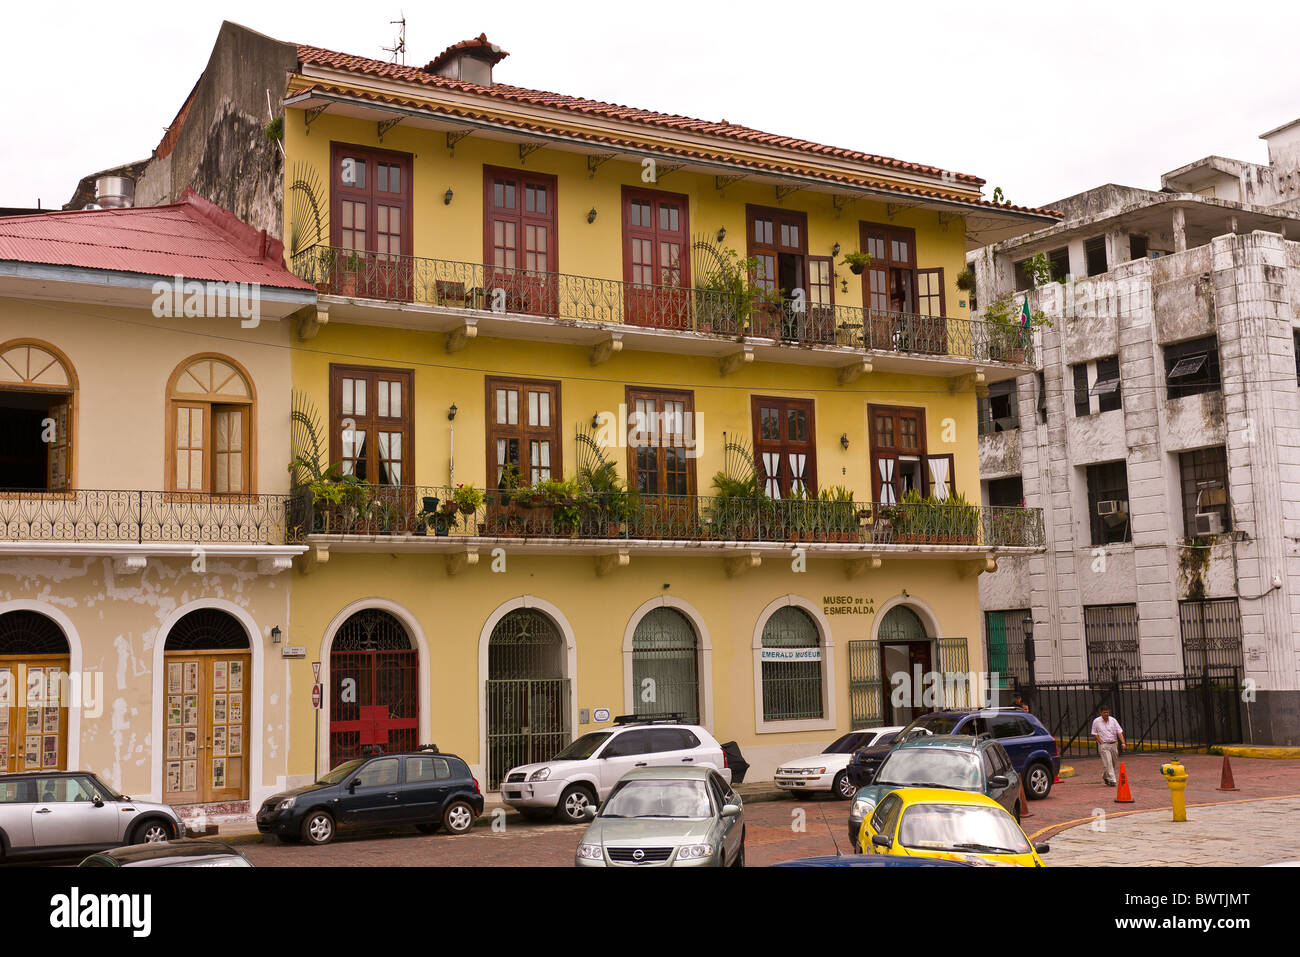 La ville de Panama, Panama - Musée de la Esmeralda, Musée de l'Émeraude, dans Casco Viejo, centre-ville historique. Banque D'Images